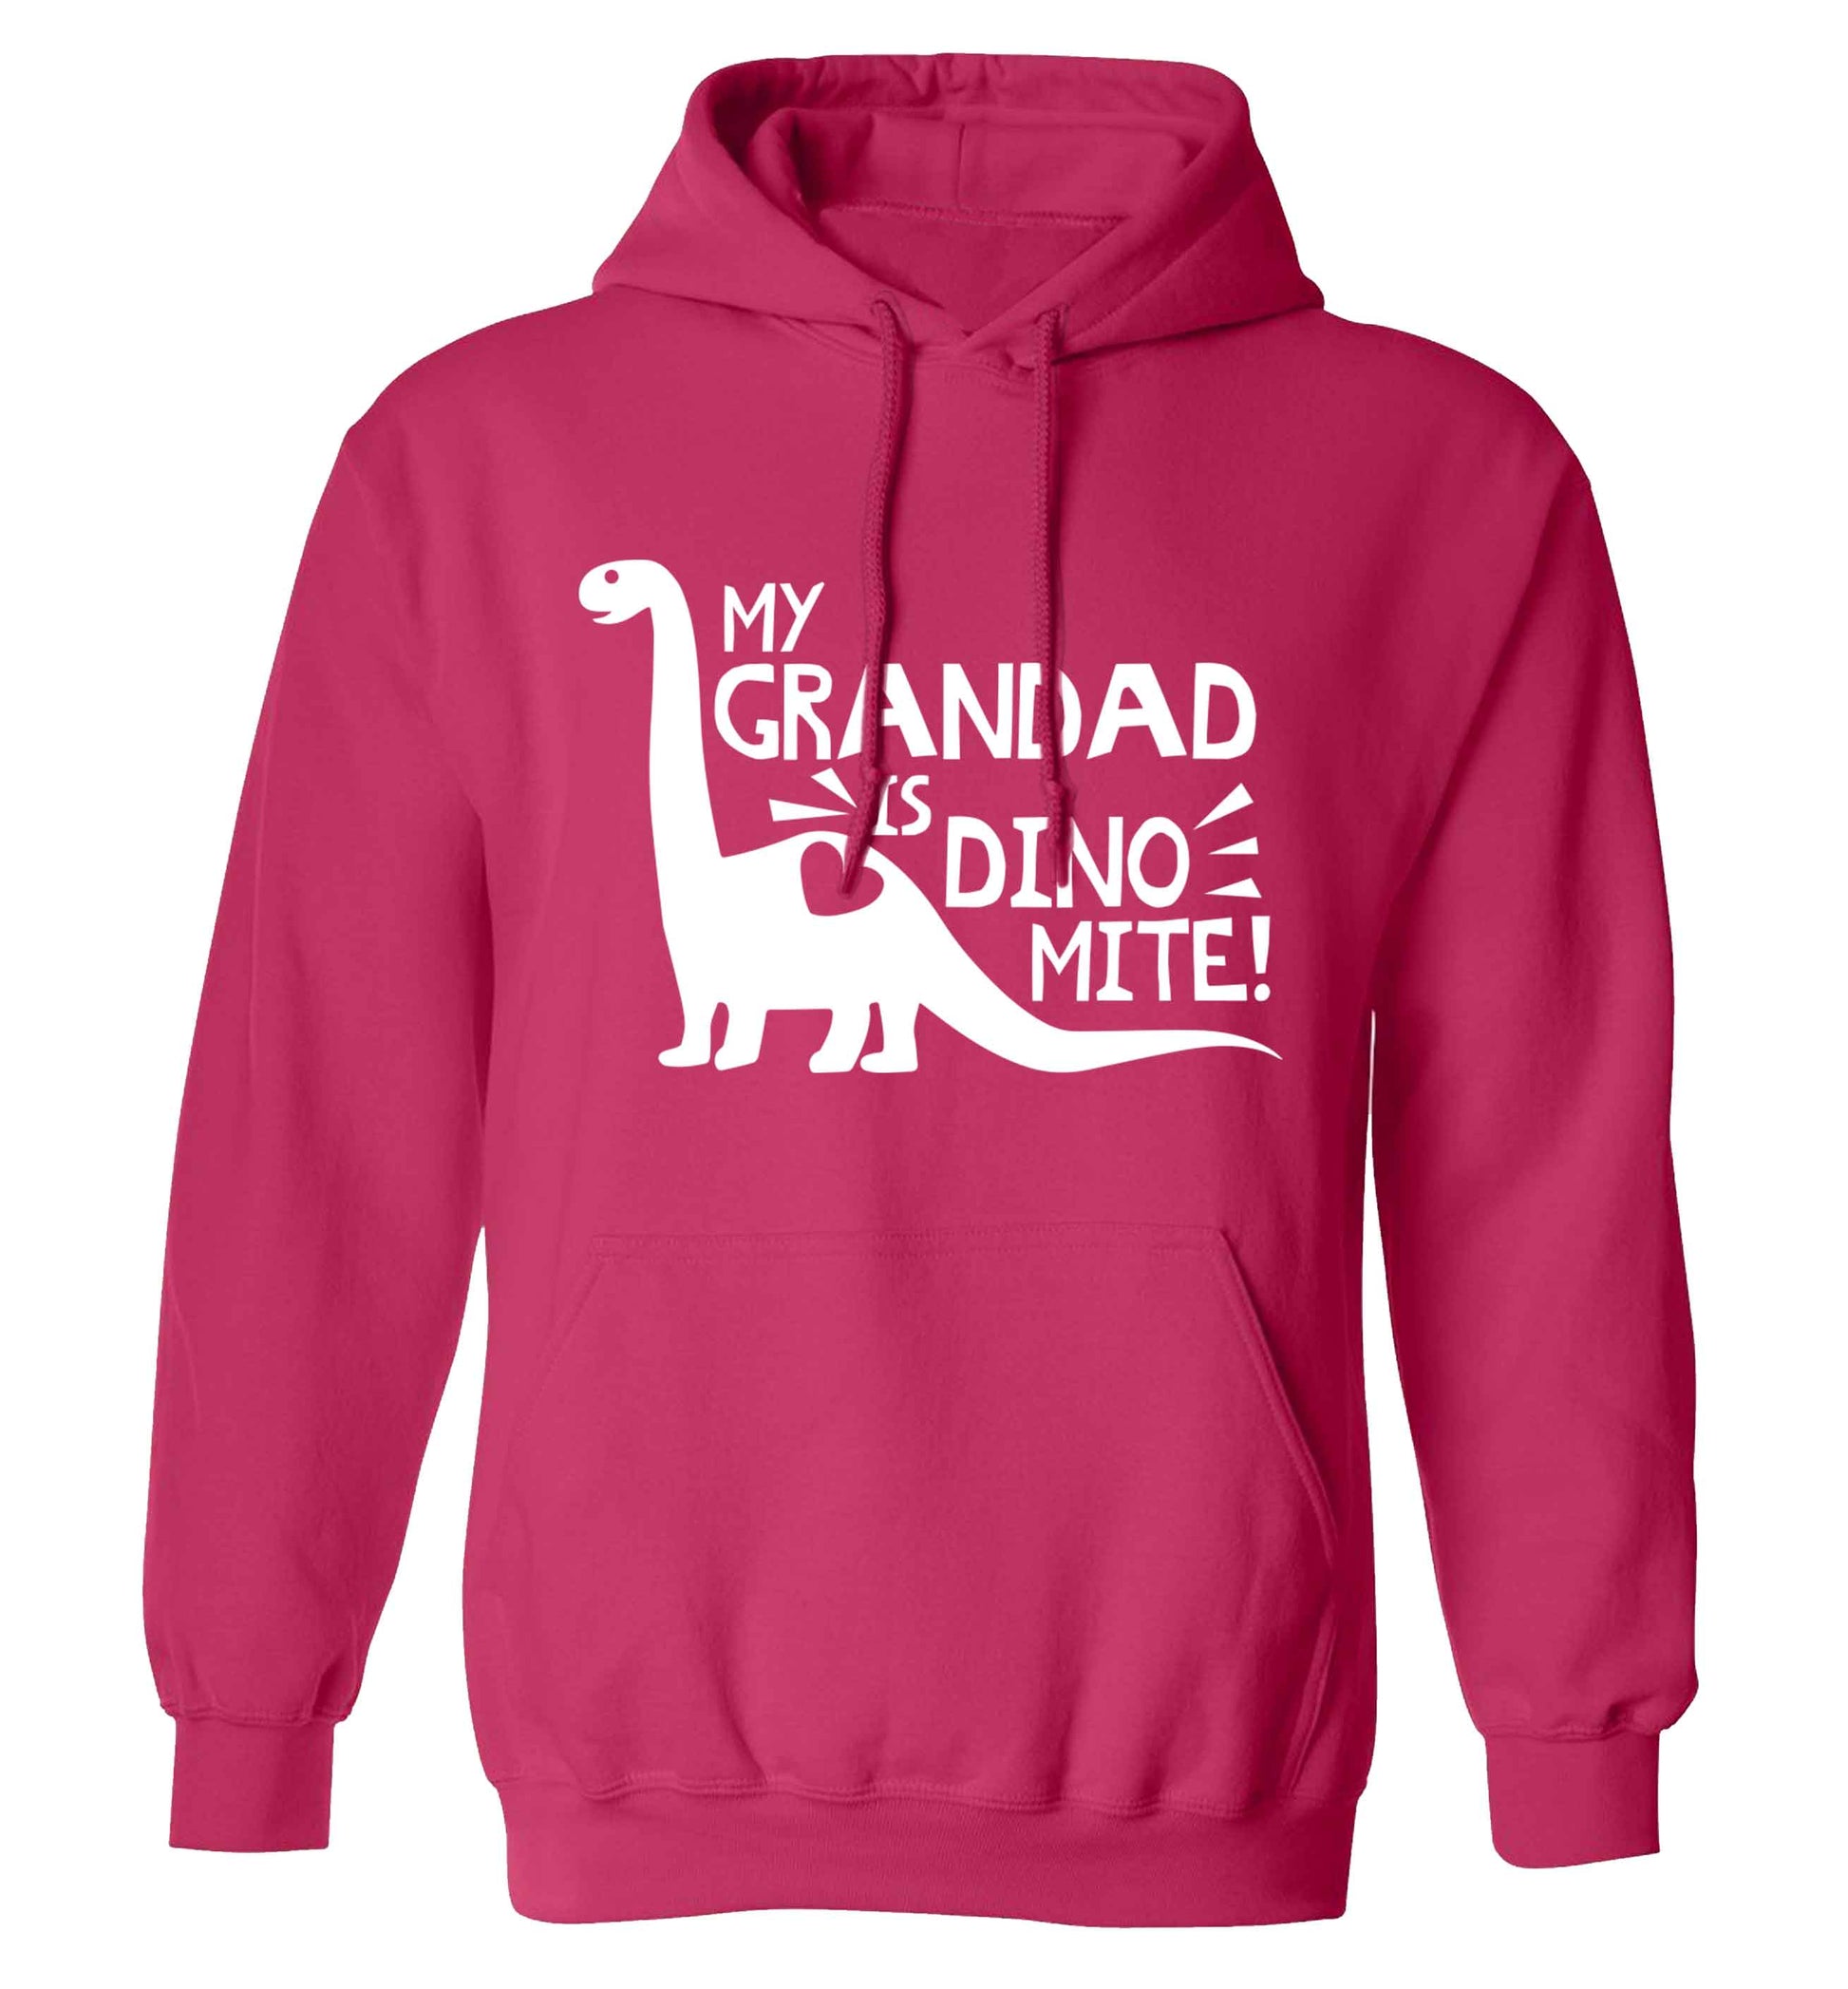 My grandad is dinomite! adults unisex pink hoodie 2XL